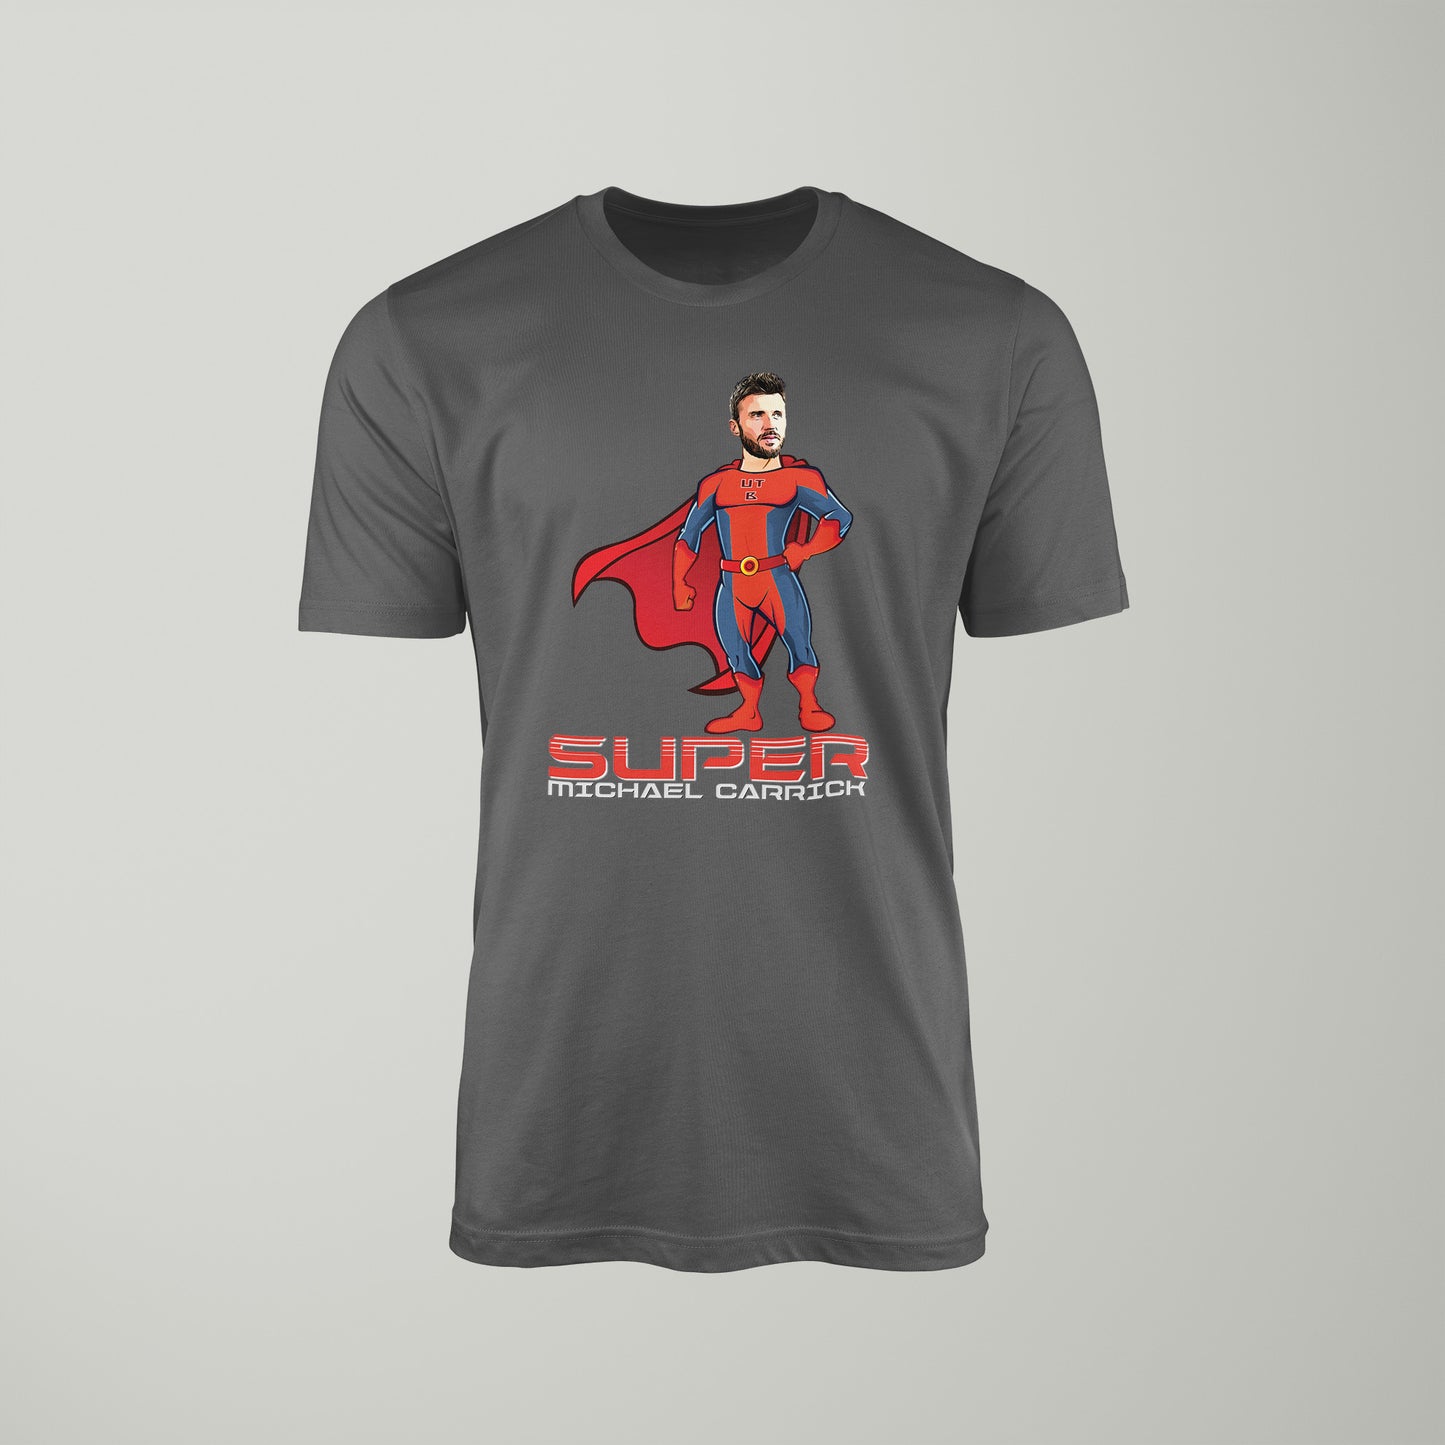 Super Michael Carrick T-Shirt